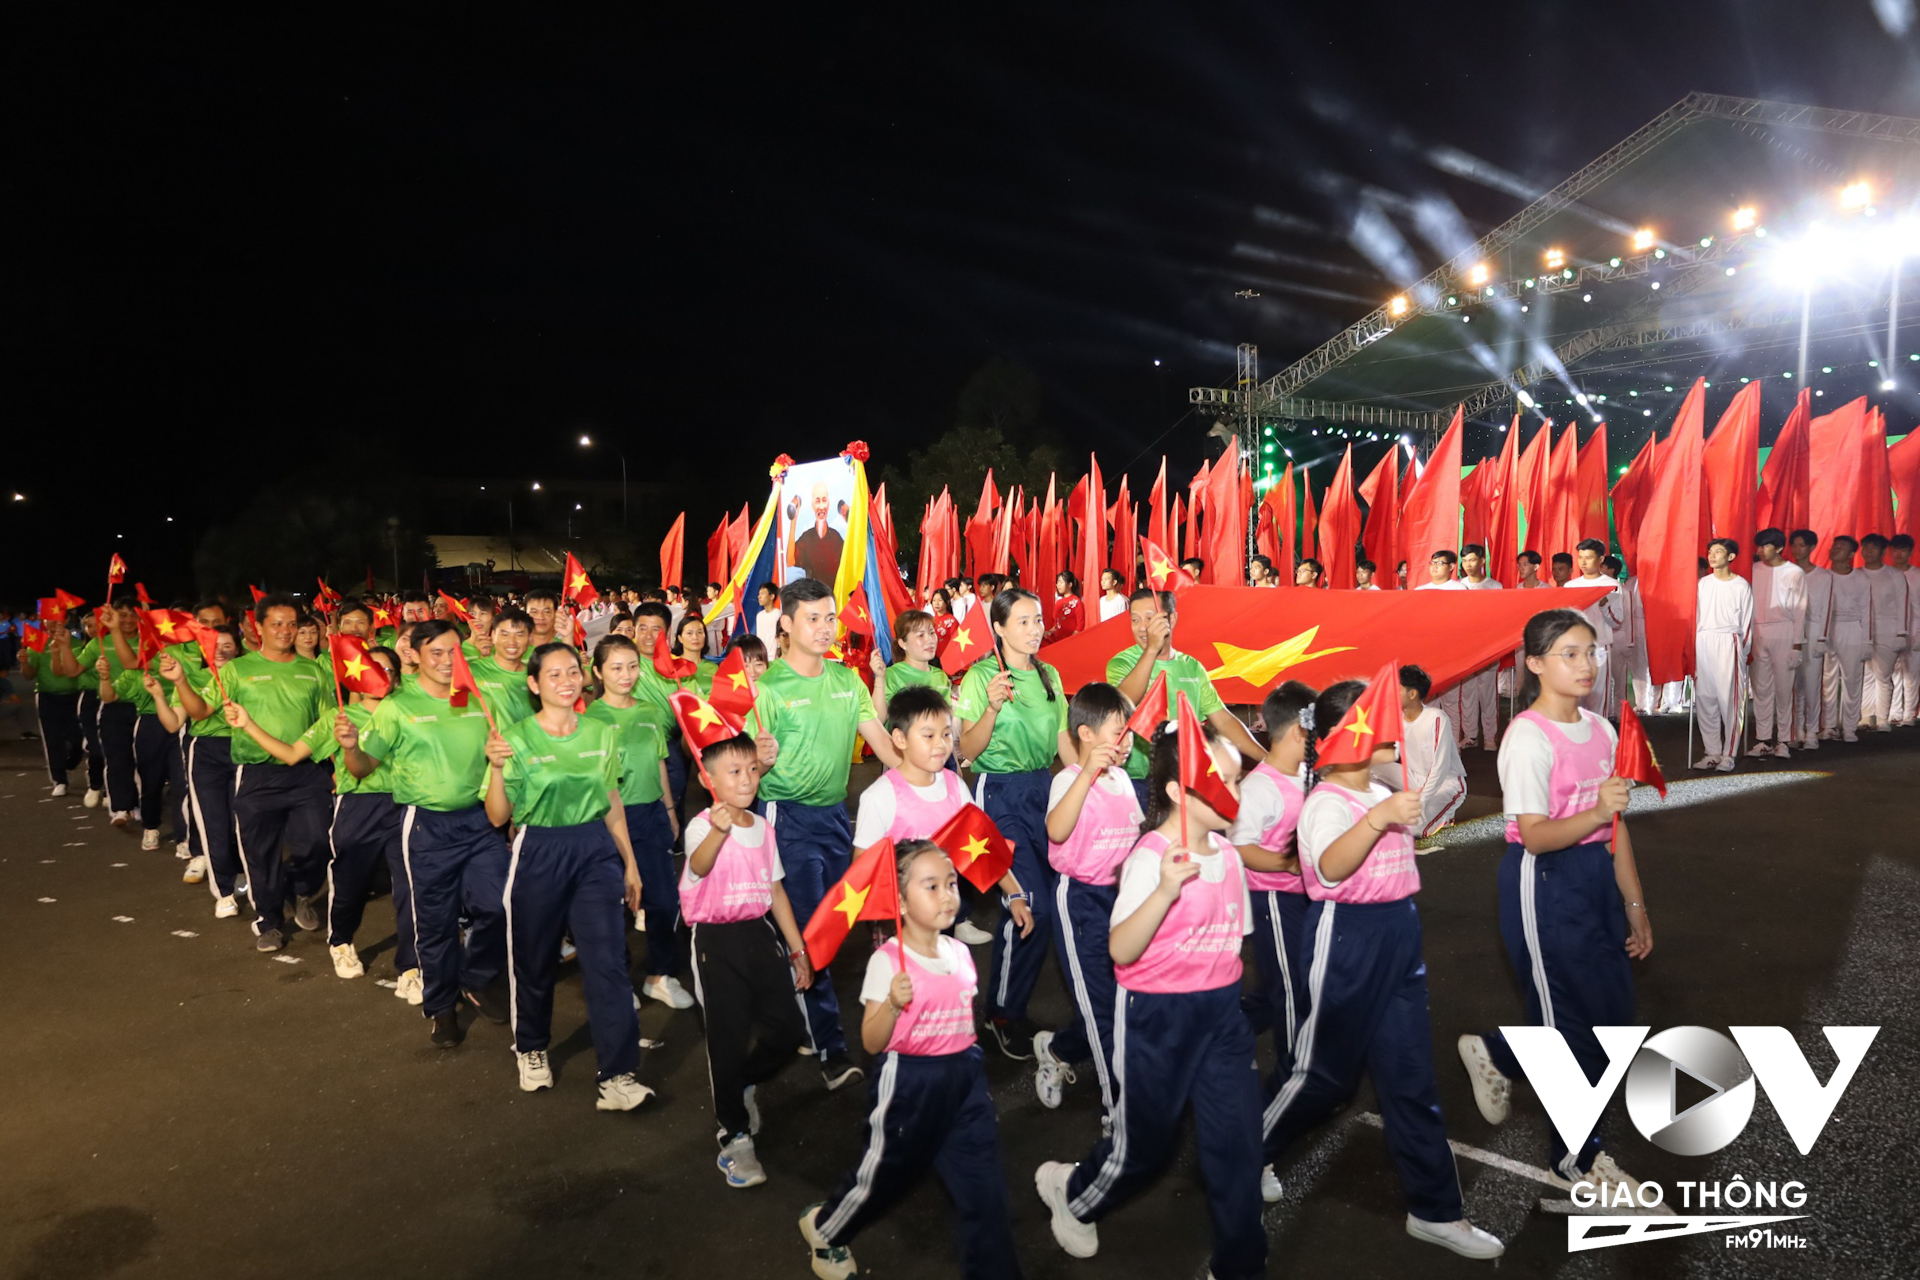 Giải Marathon quốc tế tỉnh Hậu Giang cũng chính thức khởi động với 9.000 vận động viên tham gia ở 6 cự ly.